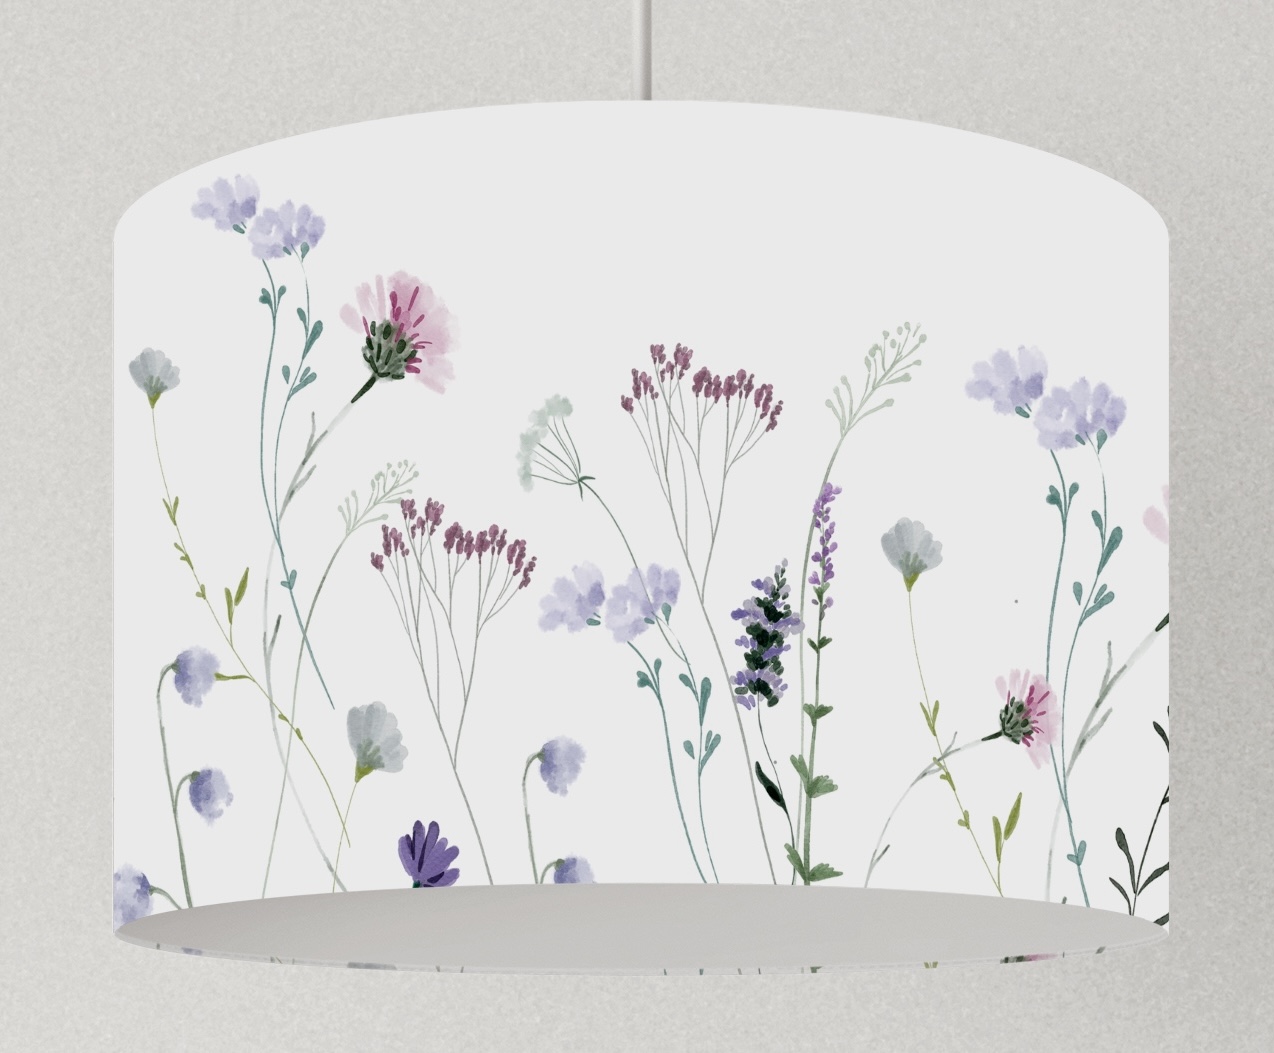 Lampe Blumen violett, Lampenschirm floral, Hängelampe Wildblumen, Deckenlampe Kornblumen 3